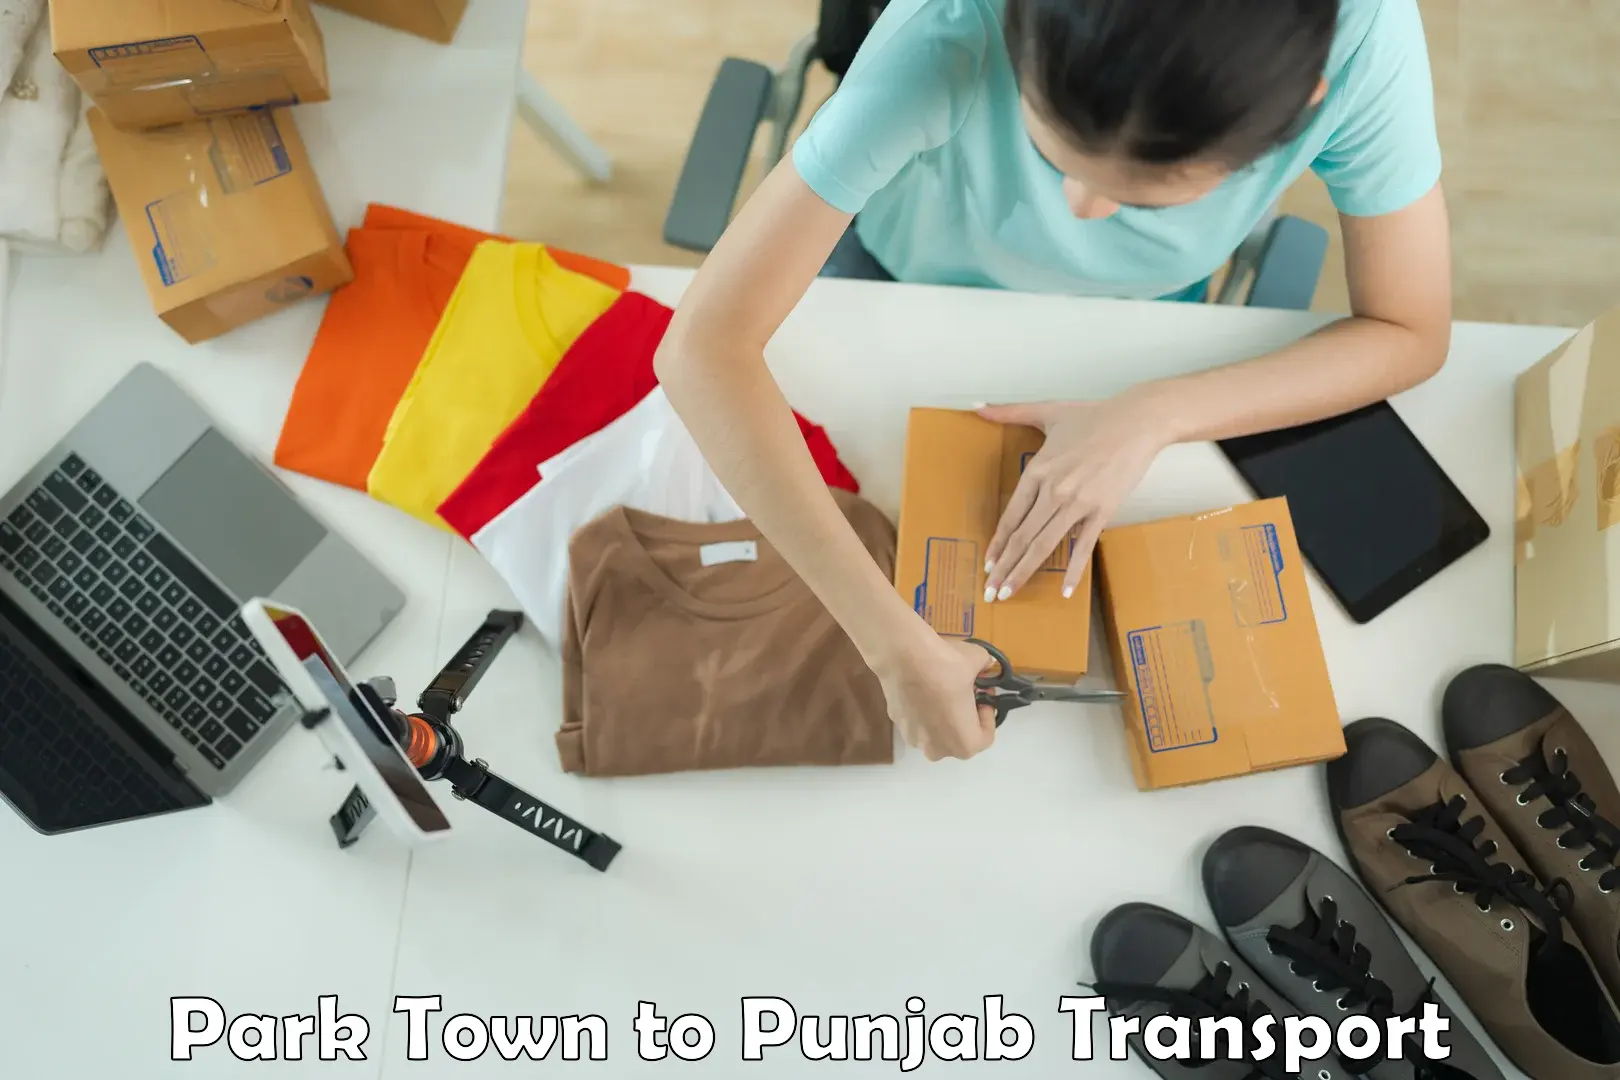 Nearest transport service Park Town to Rupnagar